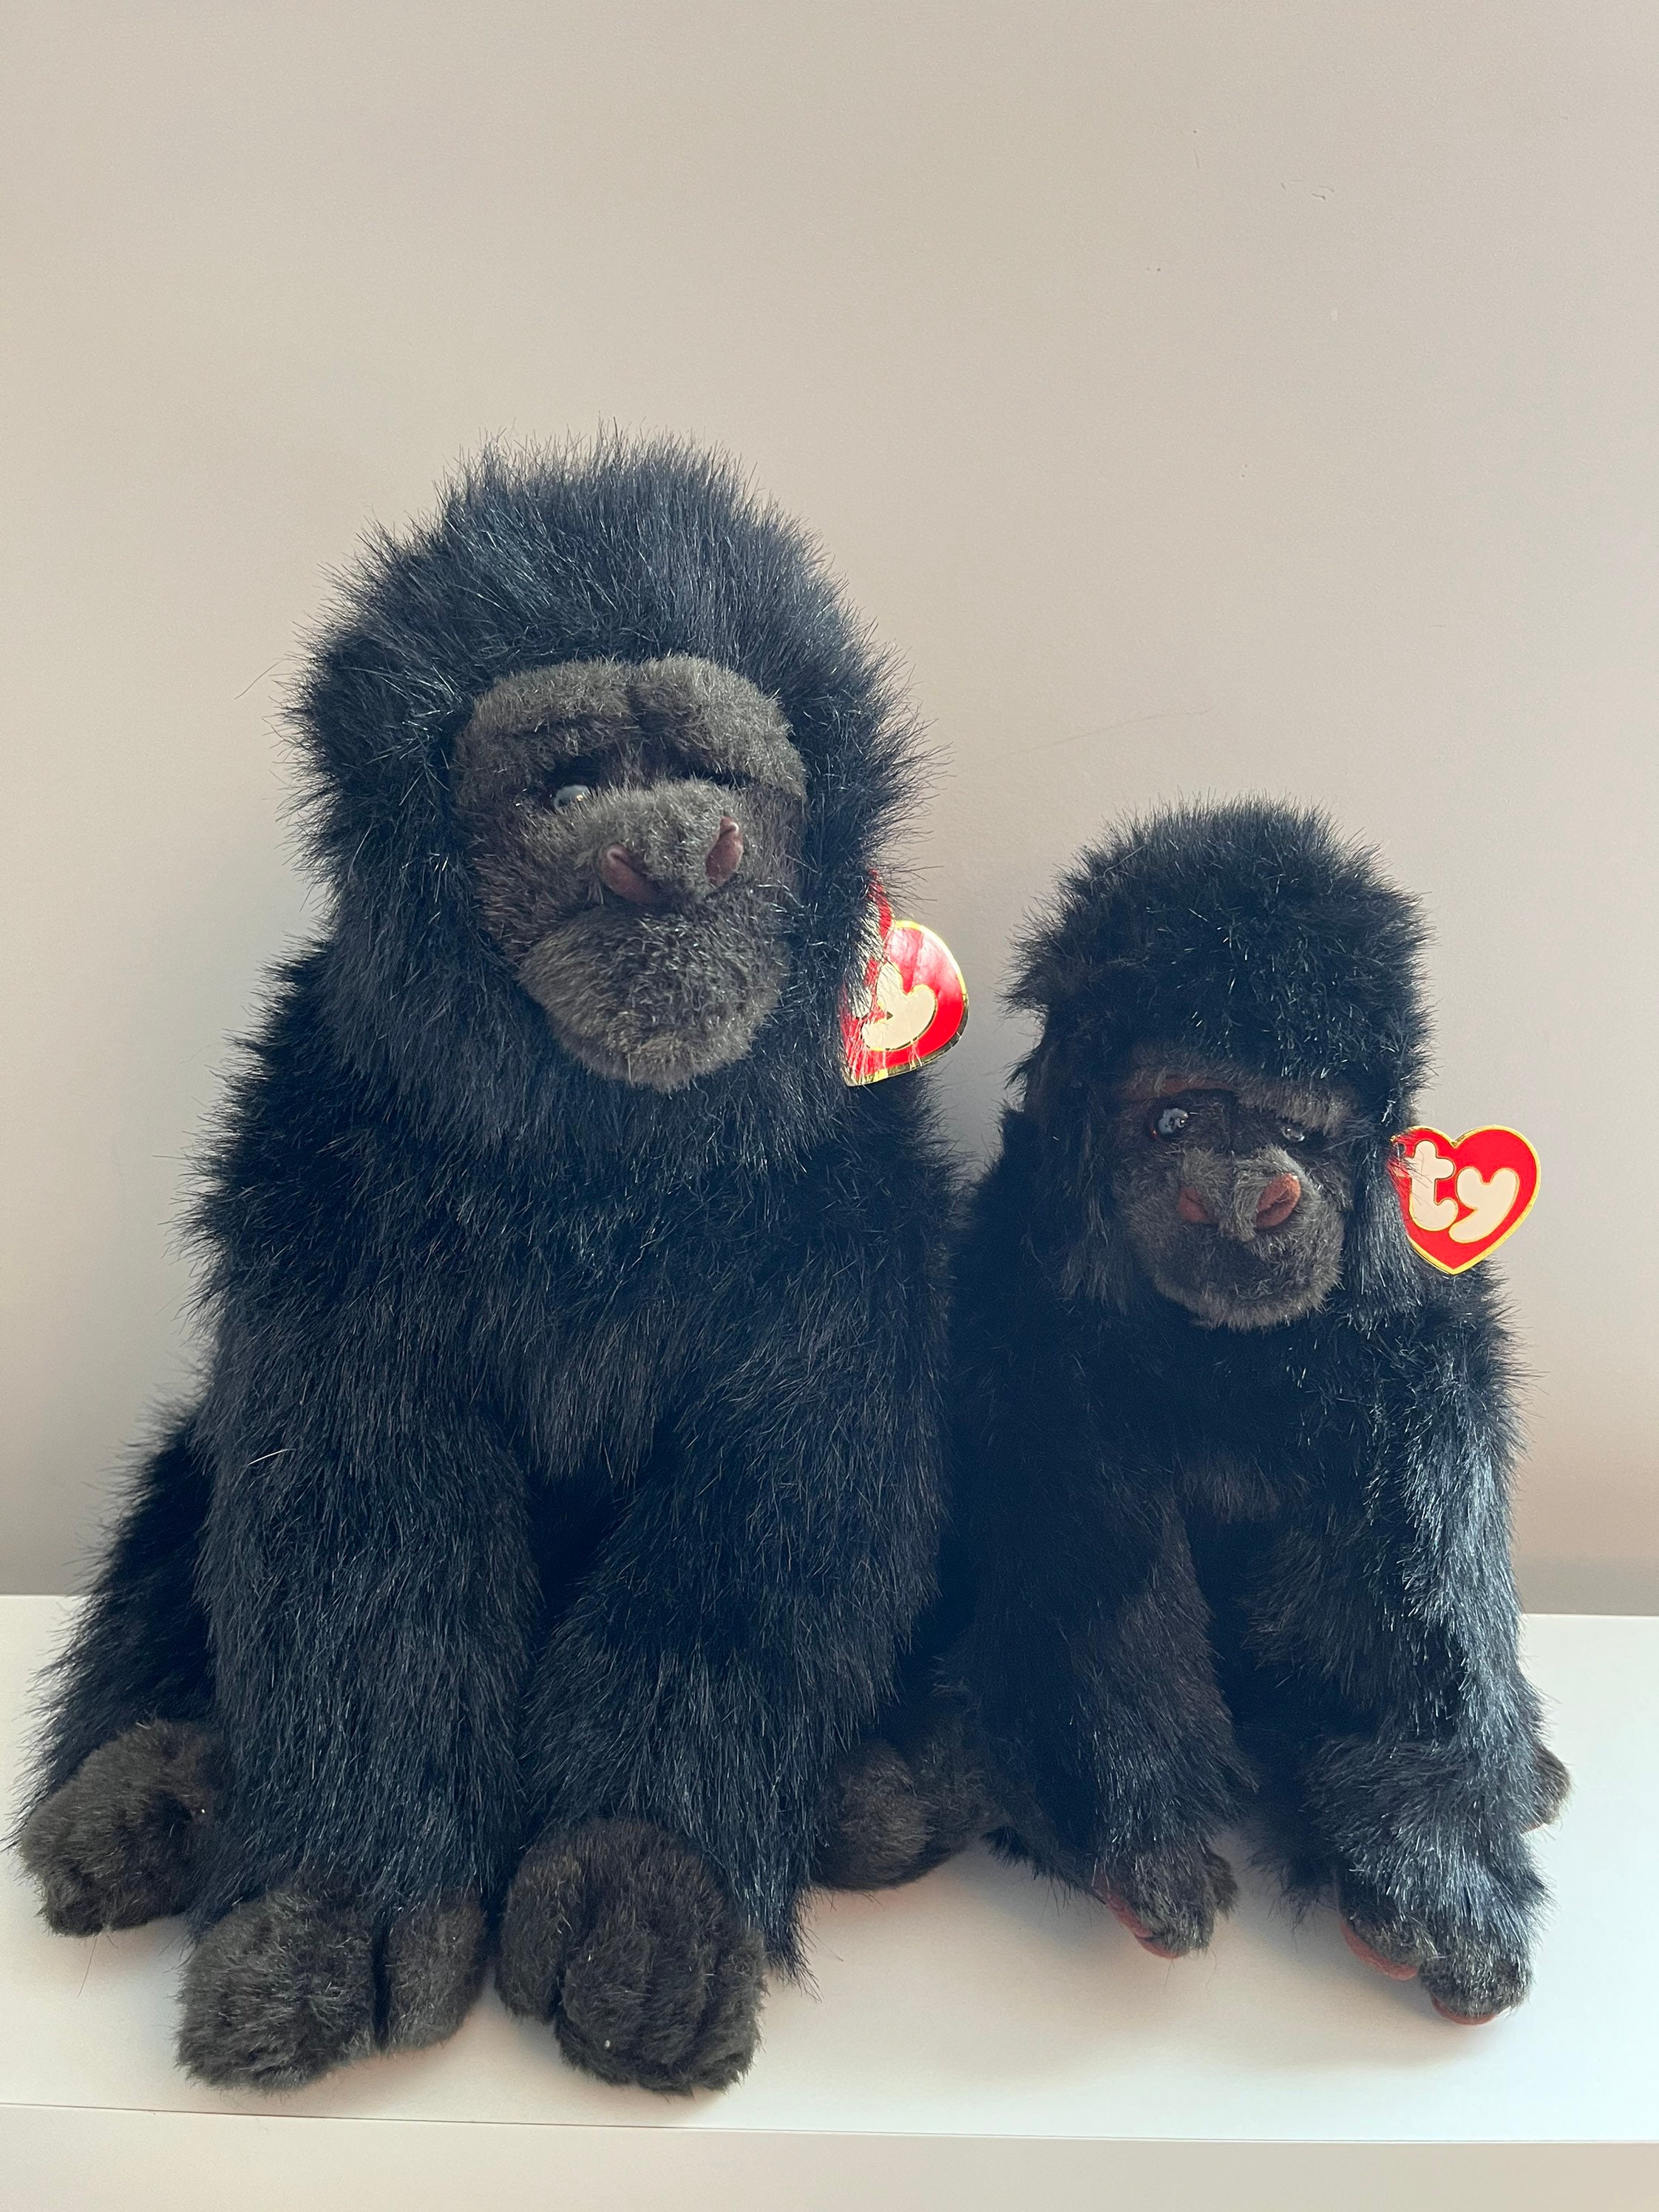  zkqeuak Gorilla Tag Plush Toys Gorilla Tags Stuffed